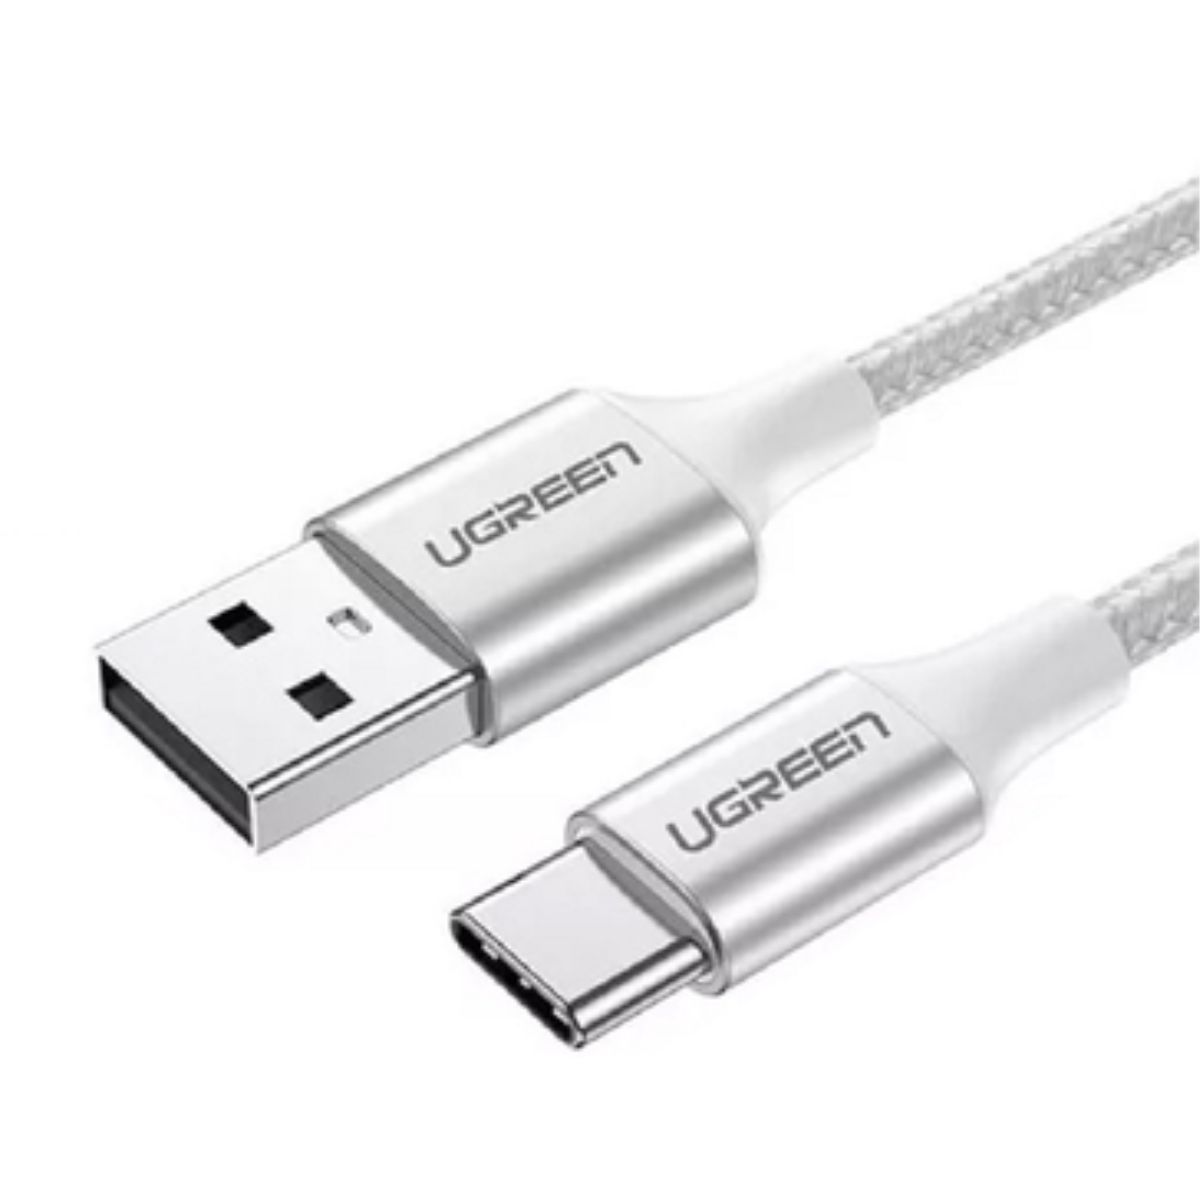 Cáp sạc dài 1.5m USB 2.0 sang Type-C Ugreen 60132 US288 màu trắng, hỗ trợ sạc nhanh 3A